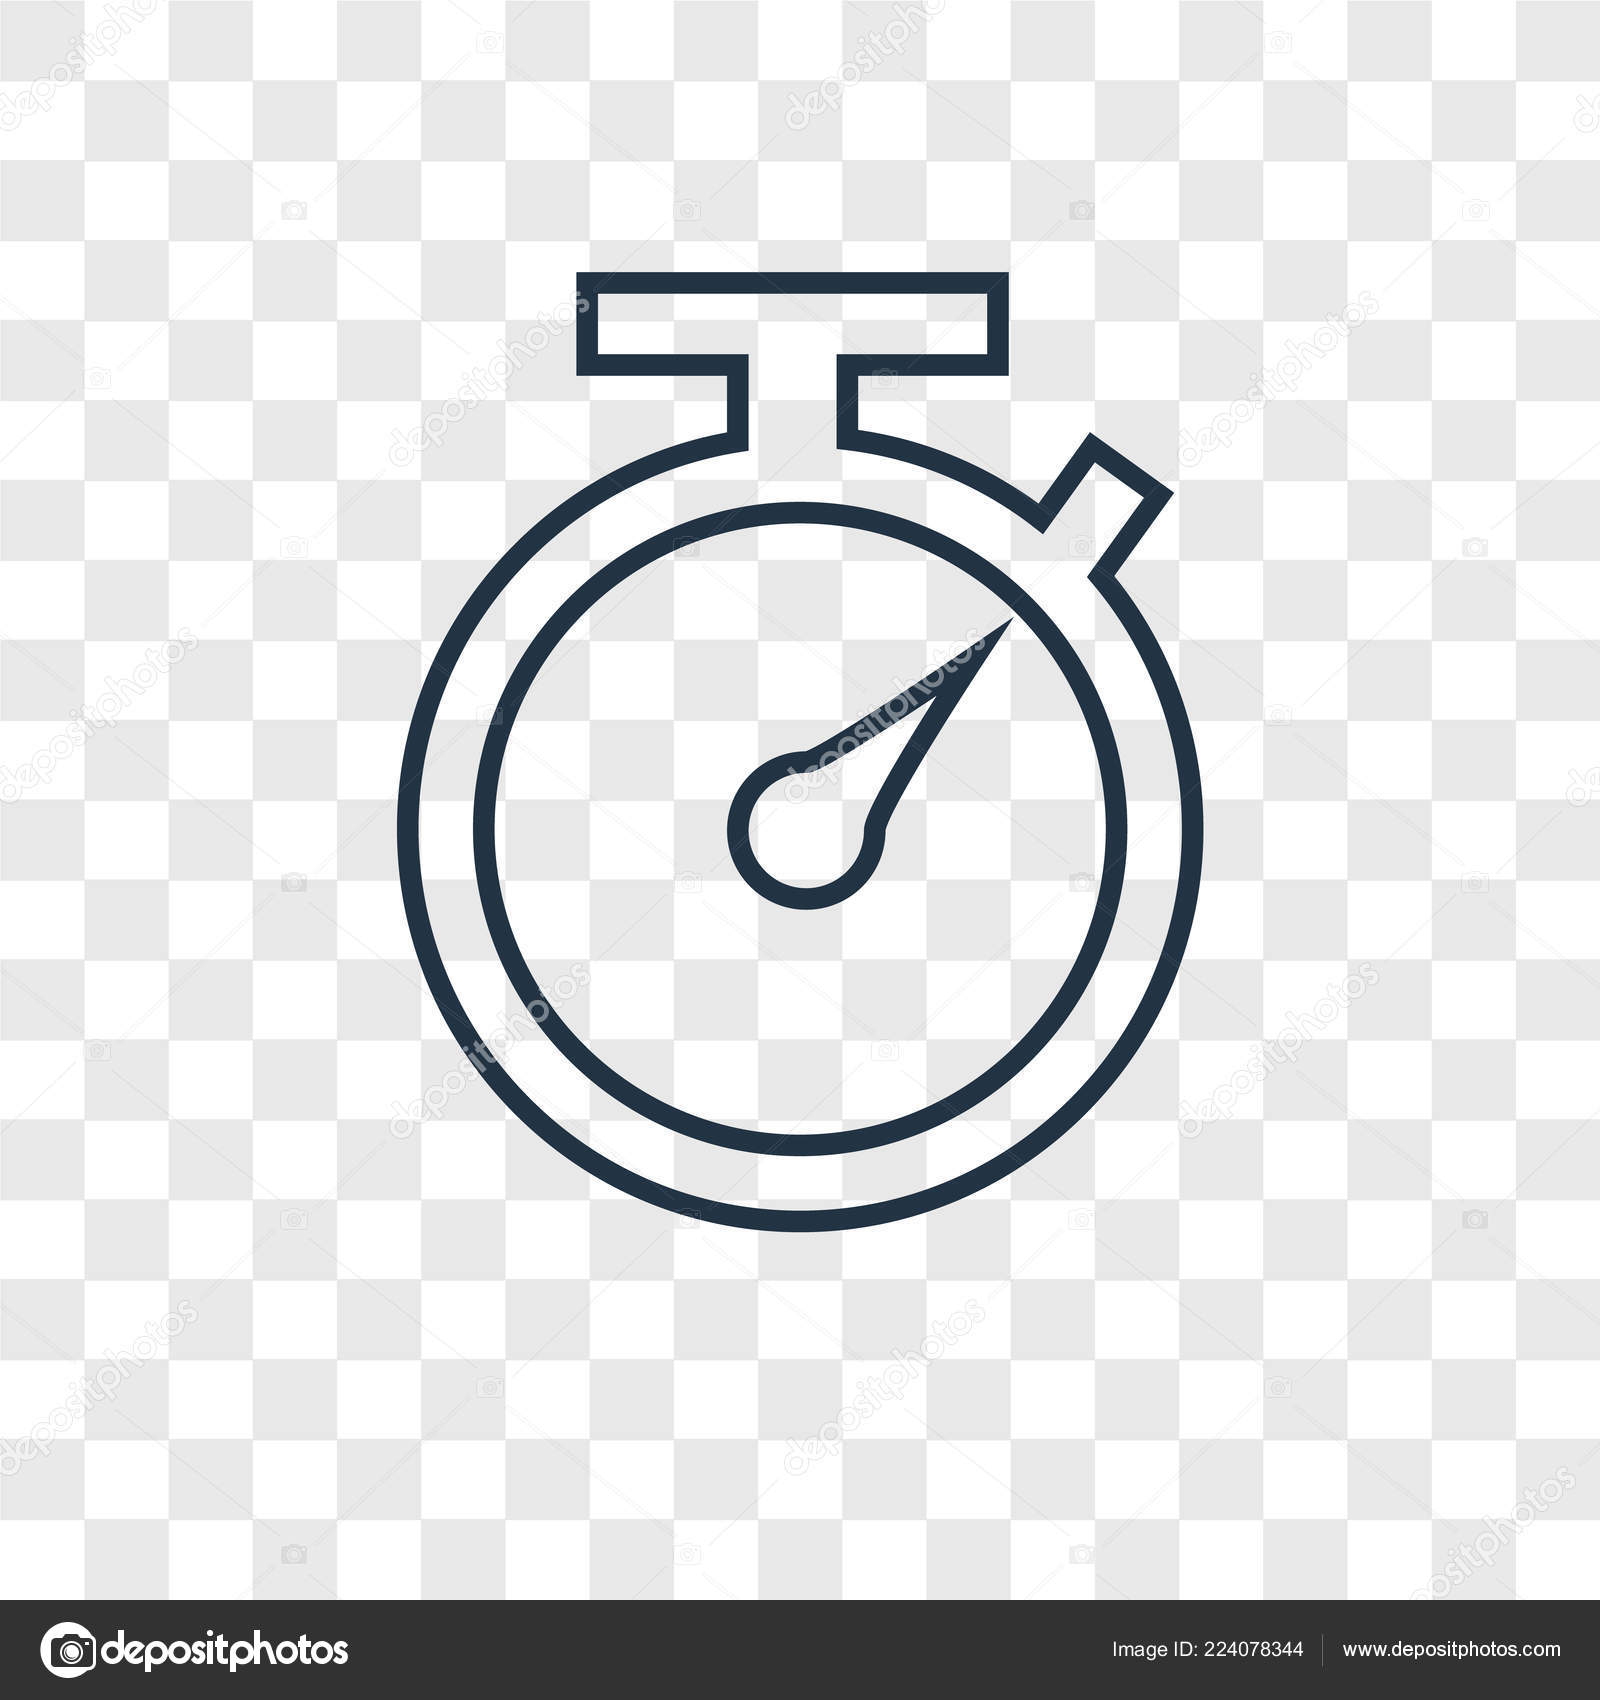 Interface de aplicativo móvel de relógio temporizador. alarme